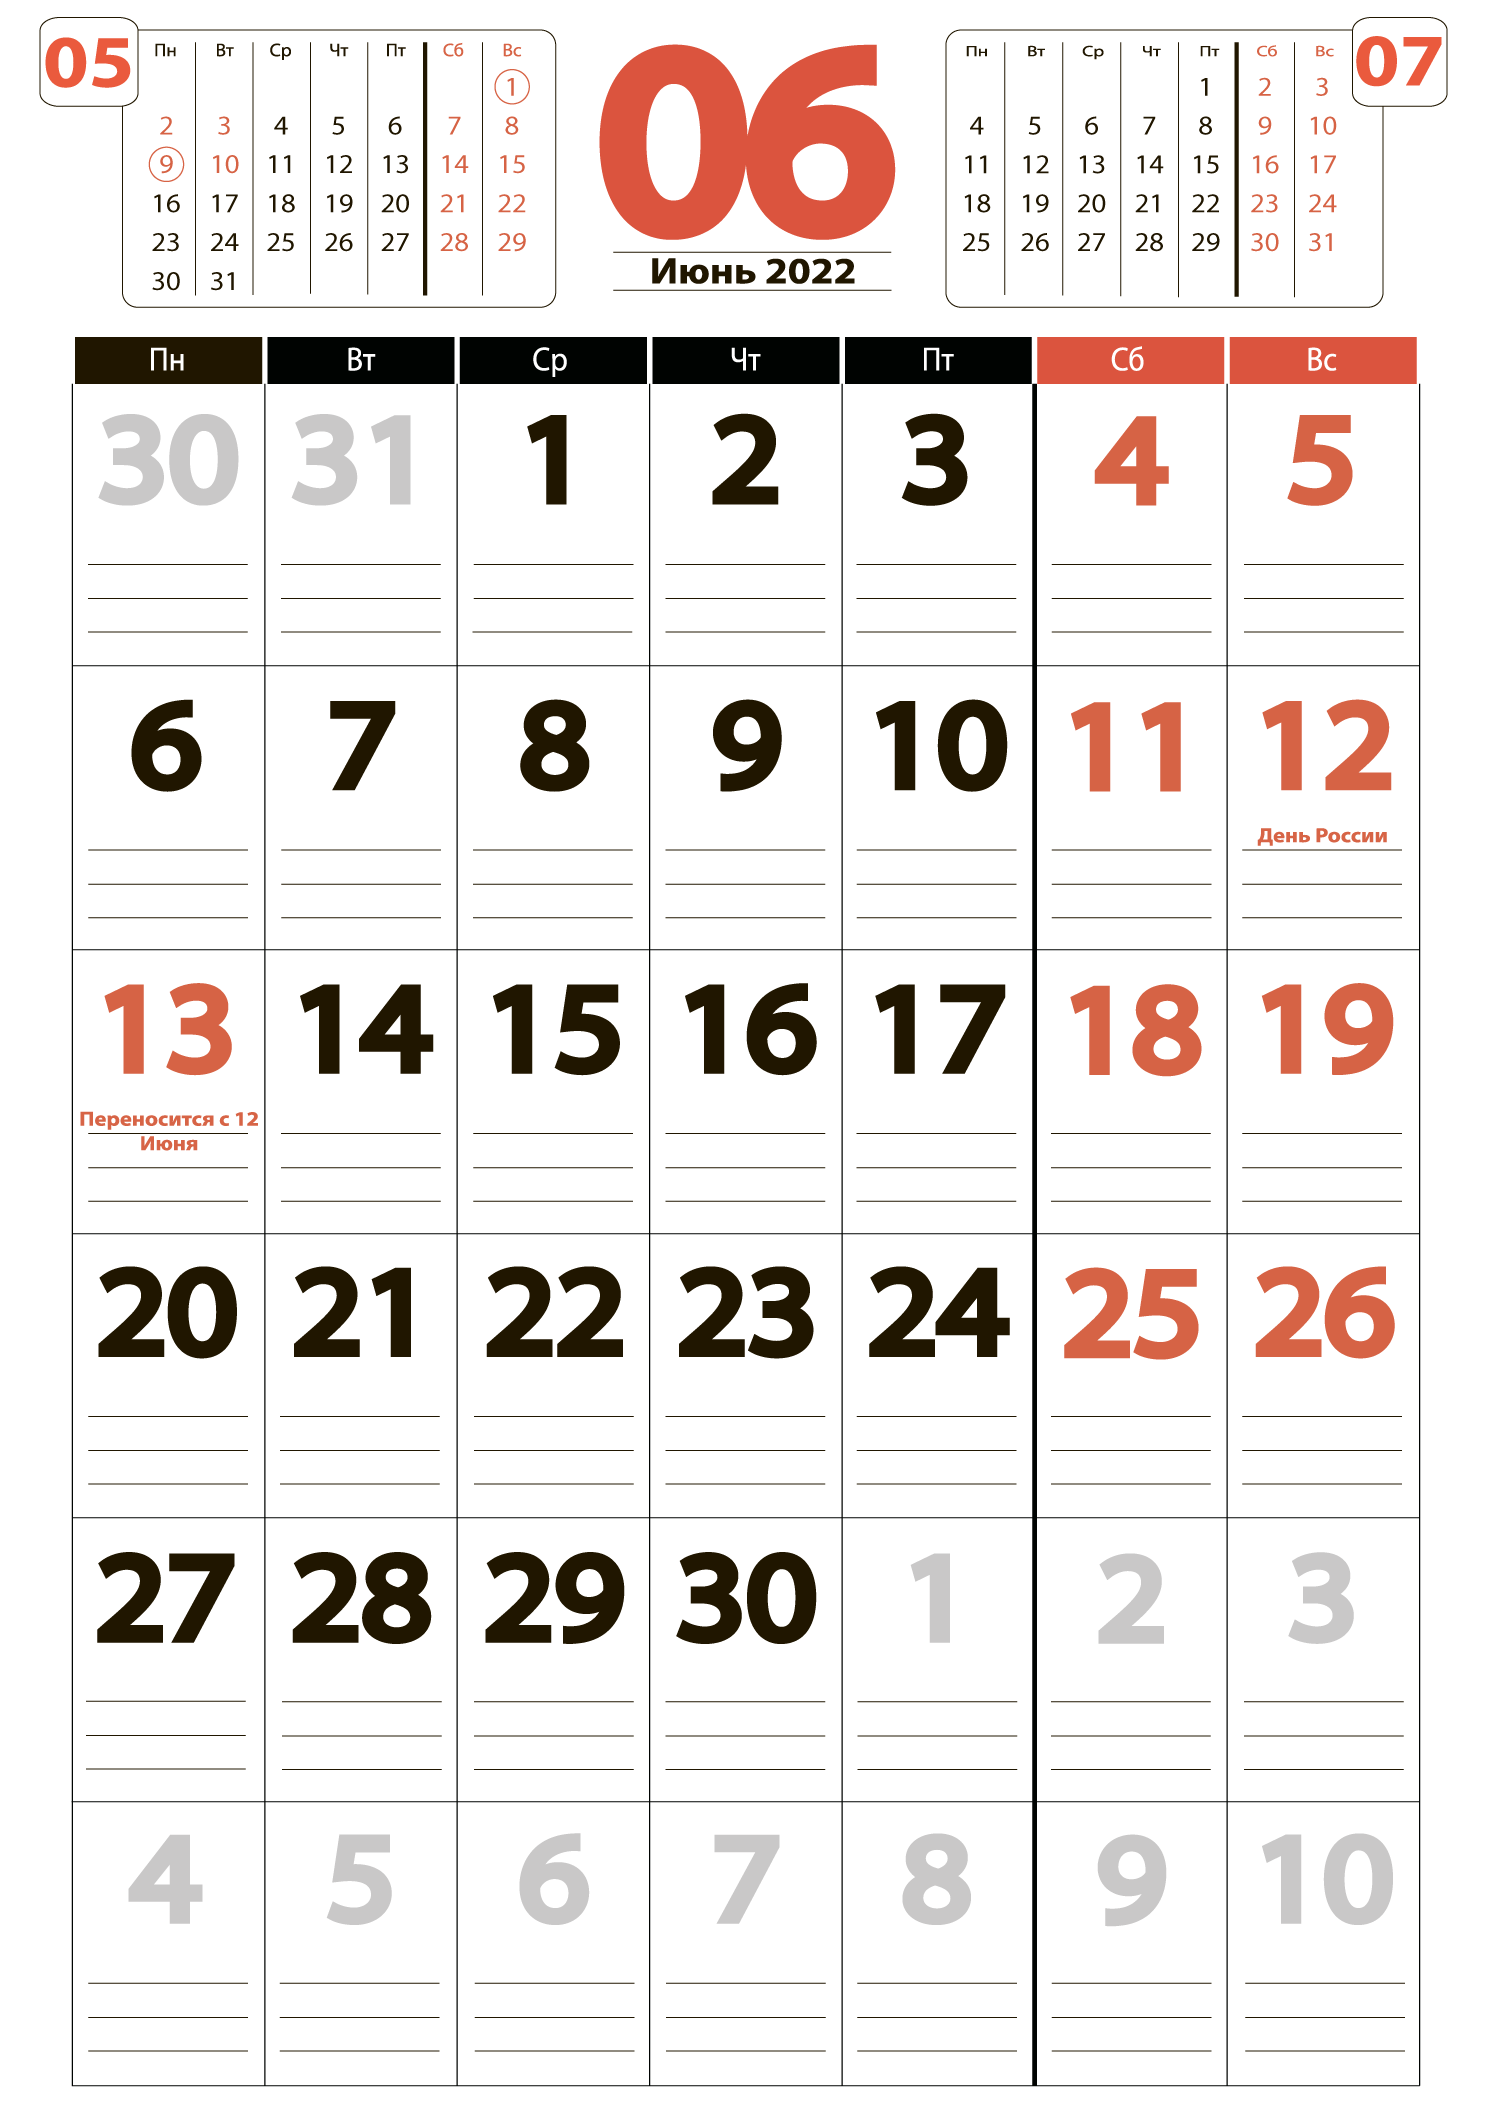 Печать крупного календаря на июнь 2022